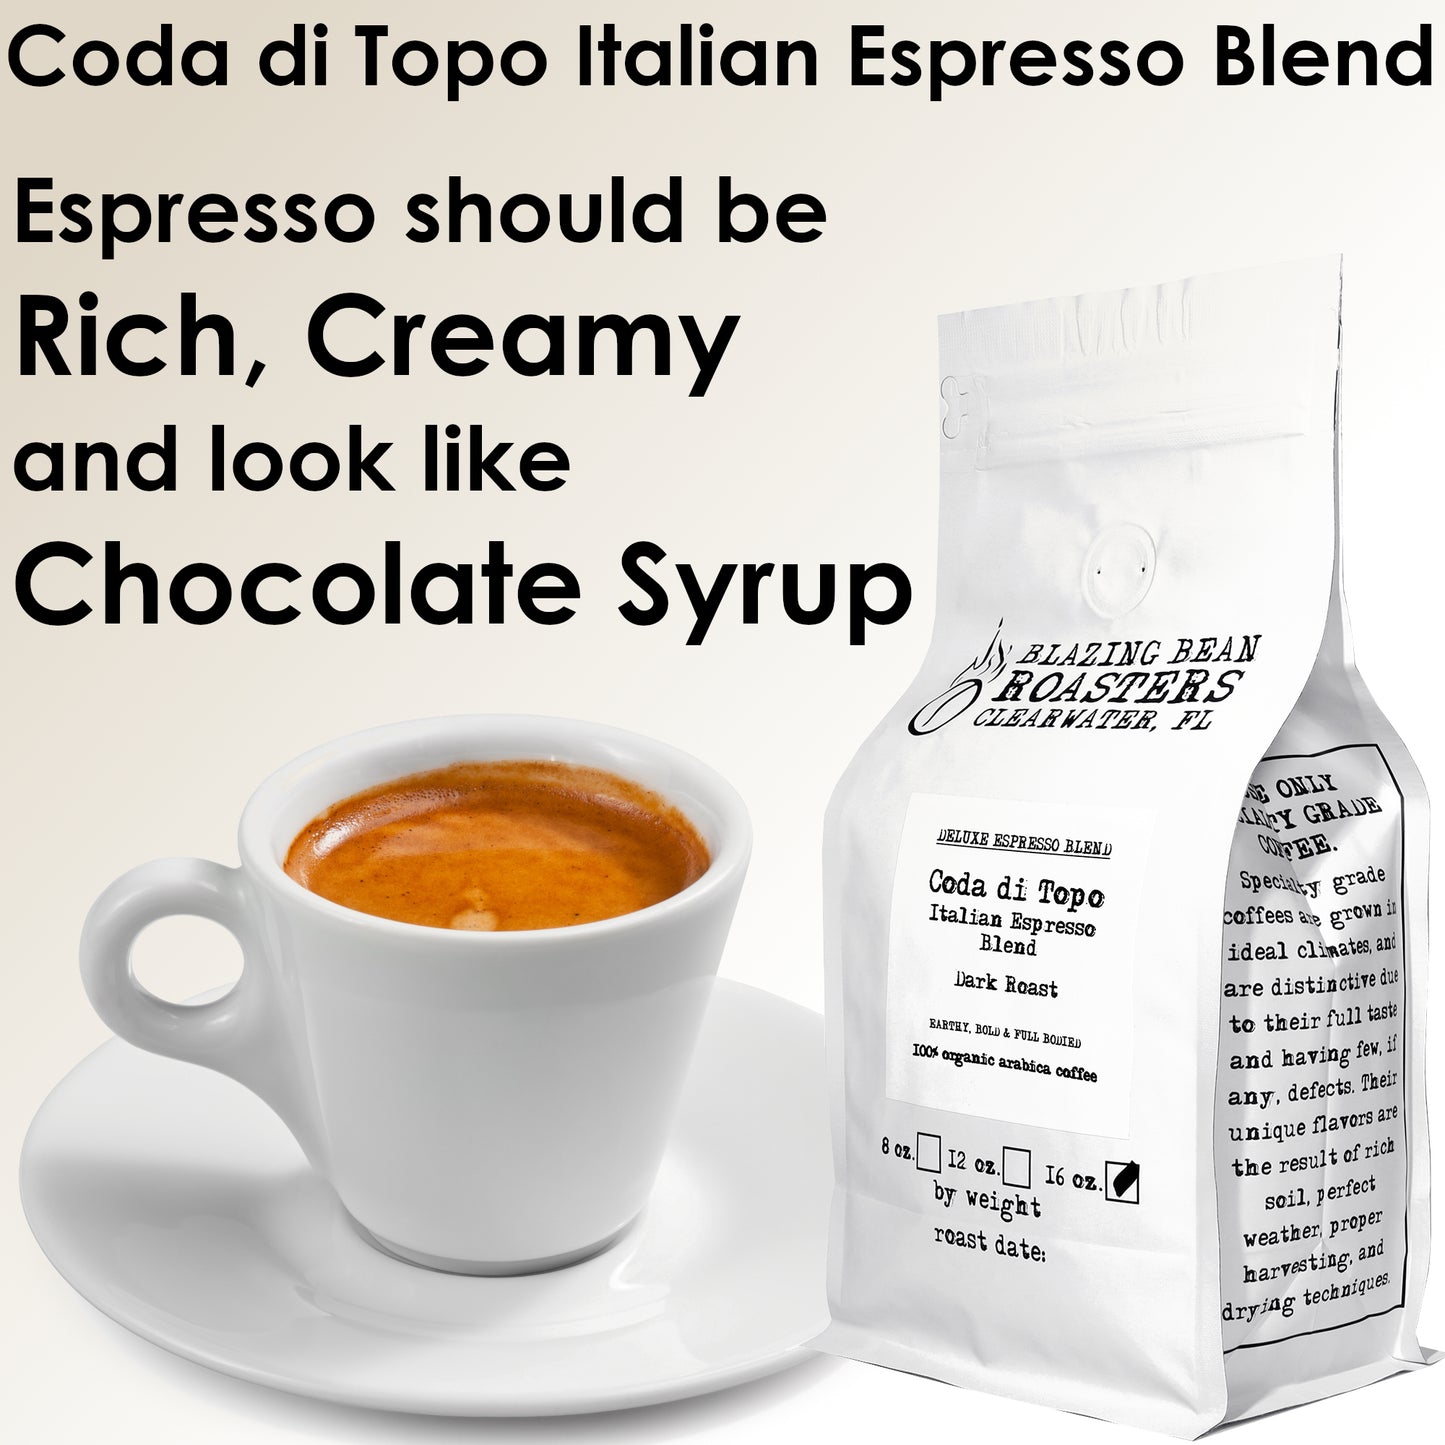 Coda di Topo Italian Espresso Blend